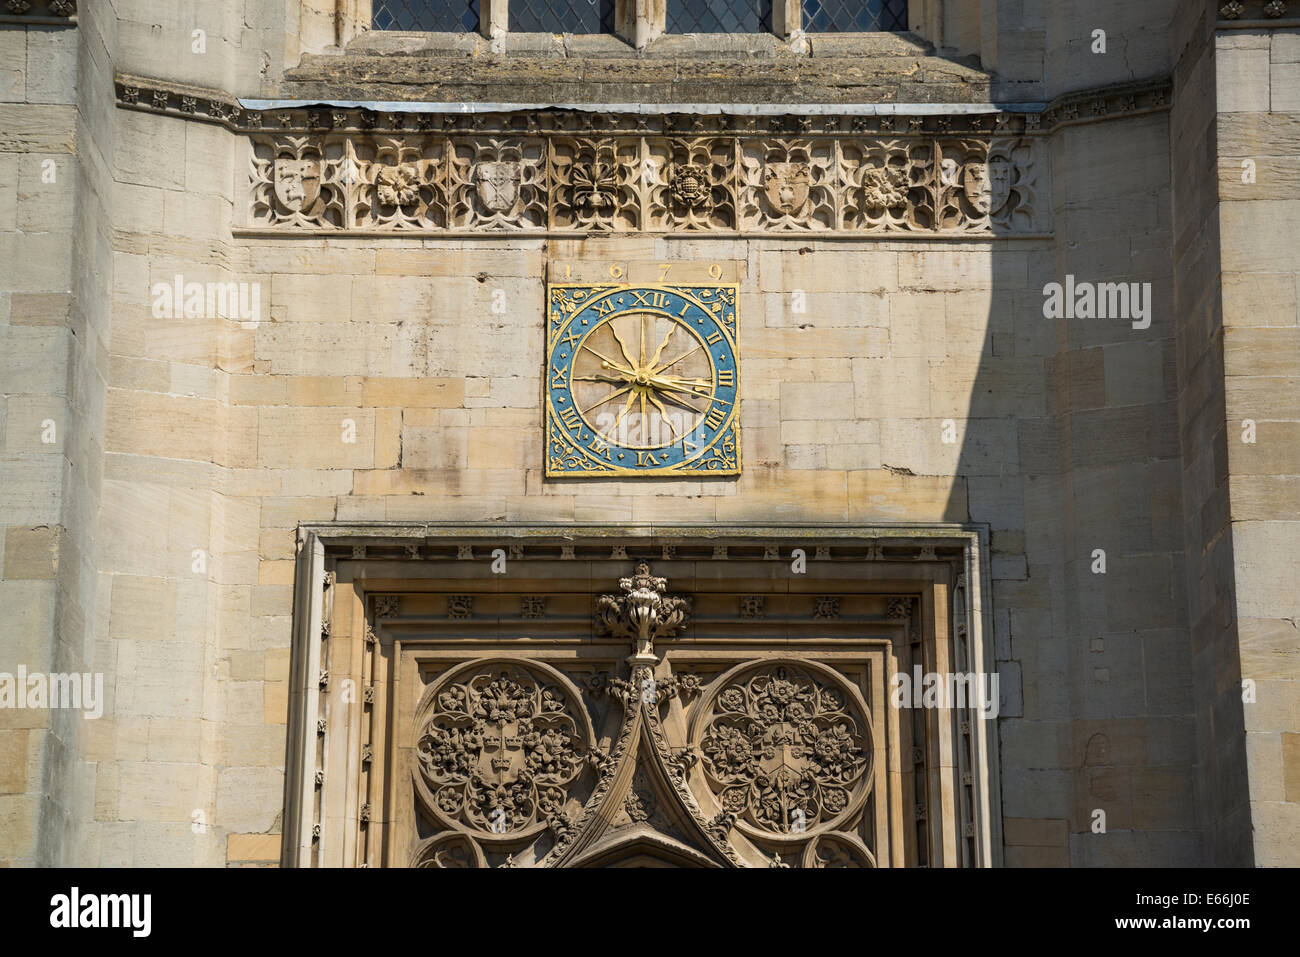 Grand St Mary's Church, de l'horloge au-dessus de l'entrée, Cambridge, England, UK Banque D'Images